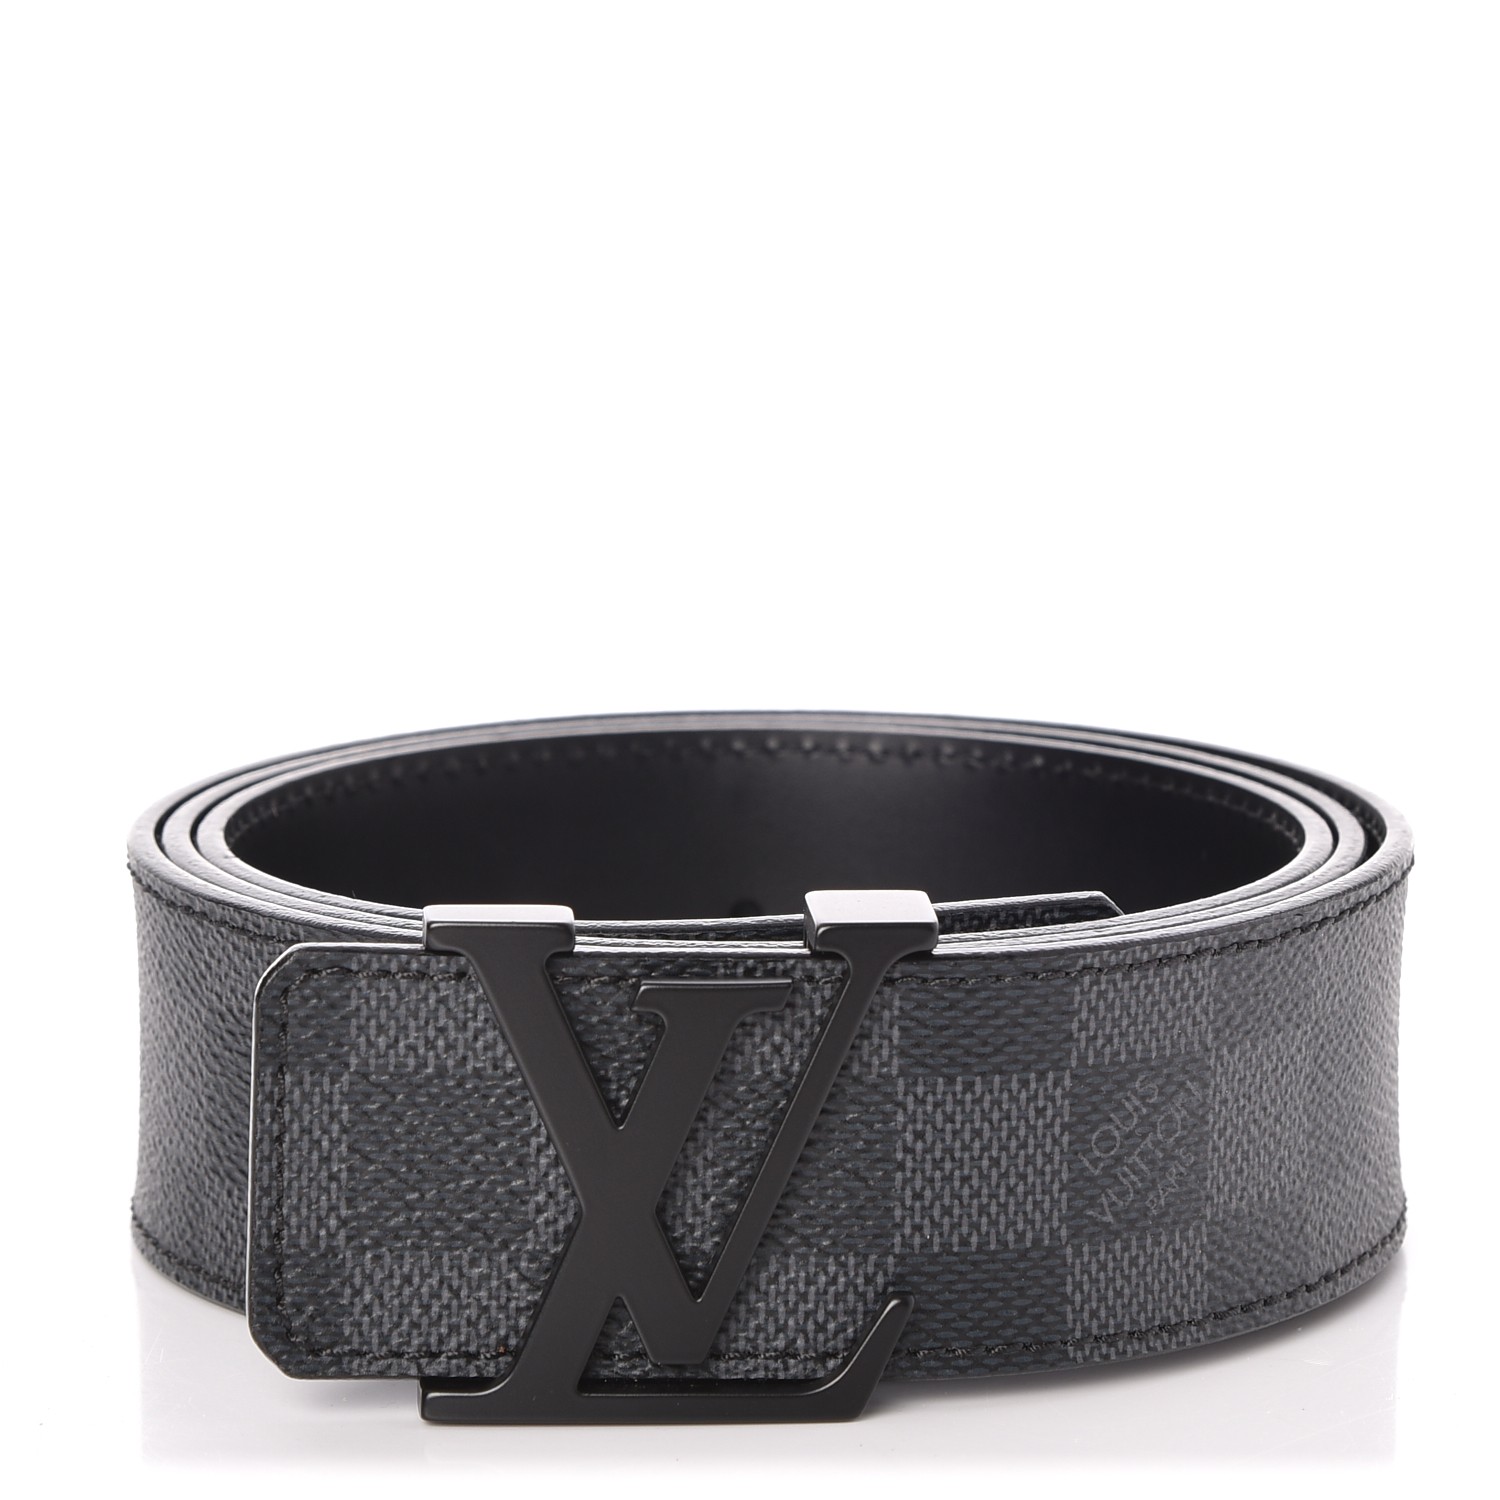 Louis Vuitton Damier Graphite Initials Belt Size 100 CM